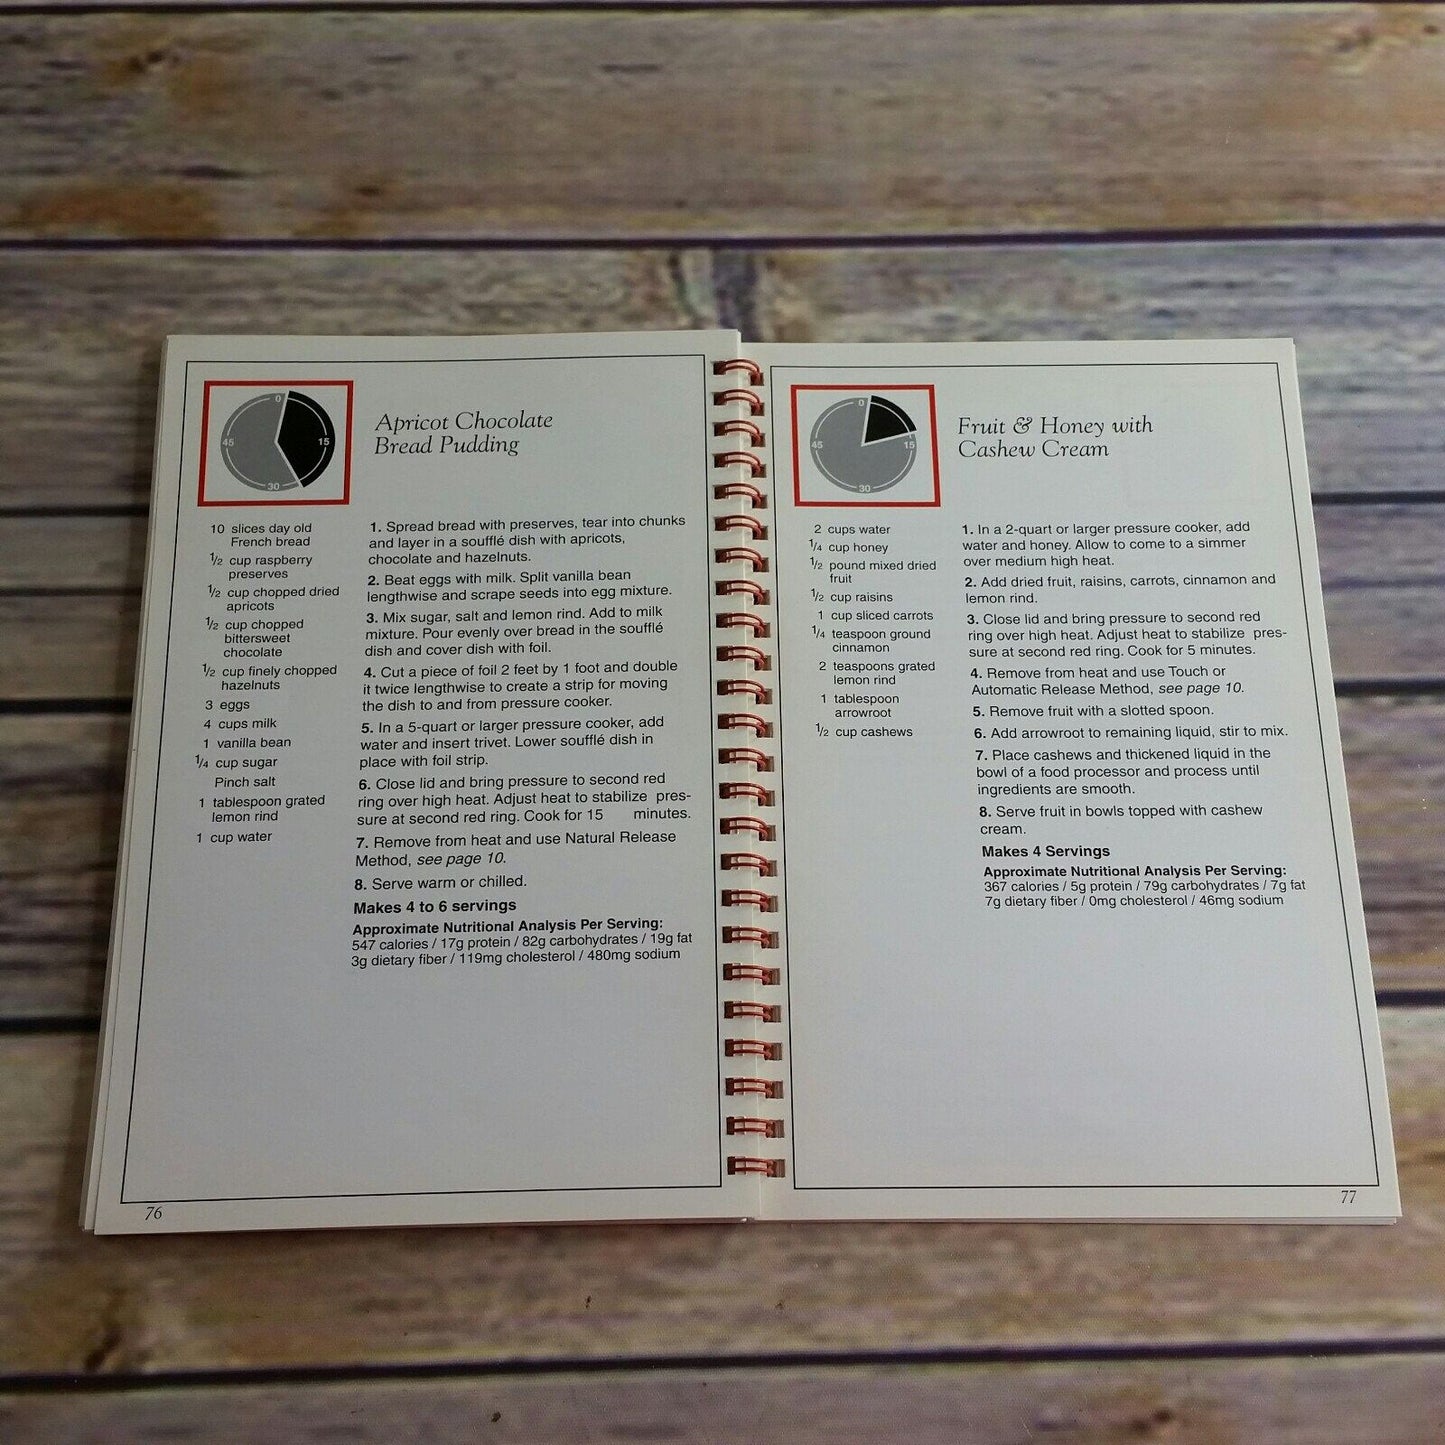 Vintage Cookbook Kuhn Rikon Pressure Cooker Quick Cuisine Recipes for Duromatic Pressure Cooker Manual Paperback Booklet Pamphlet